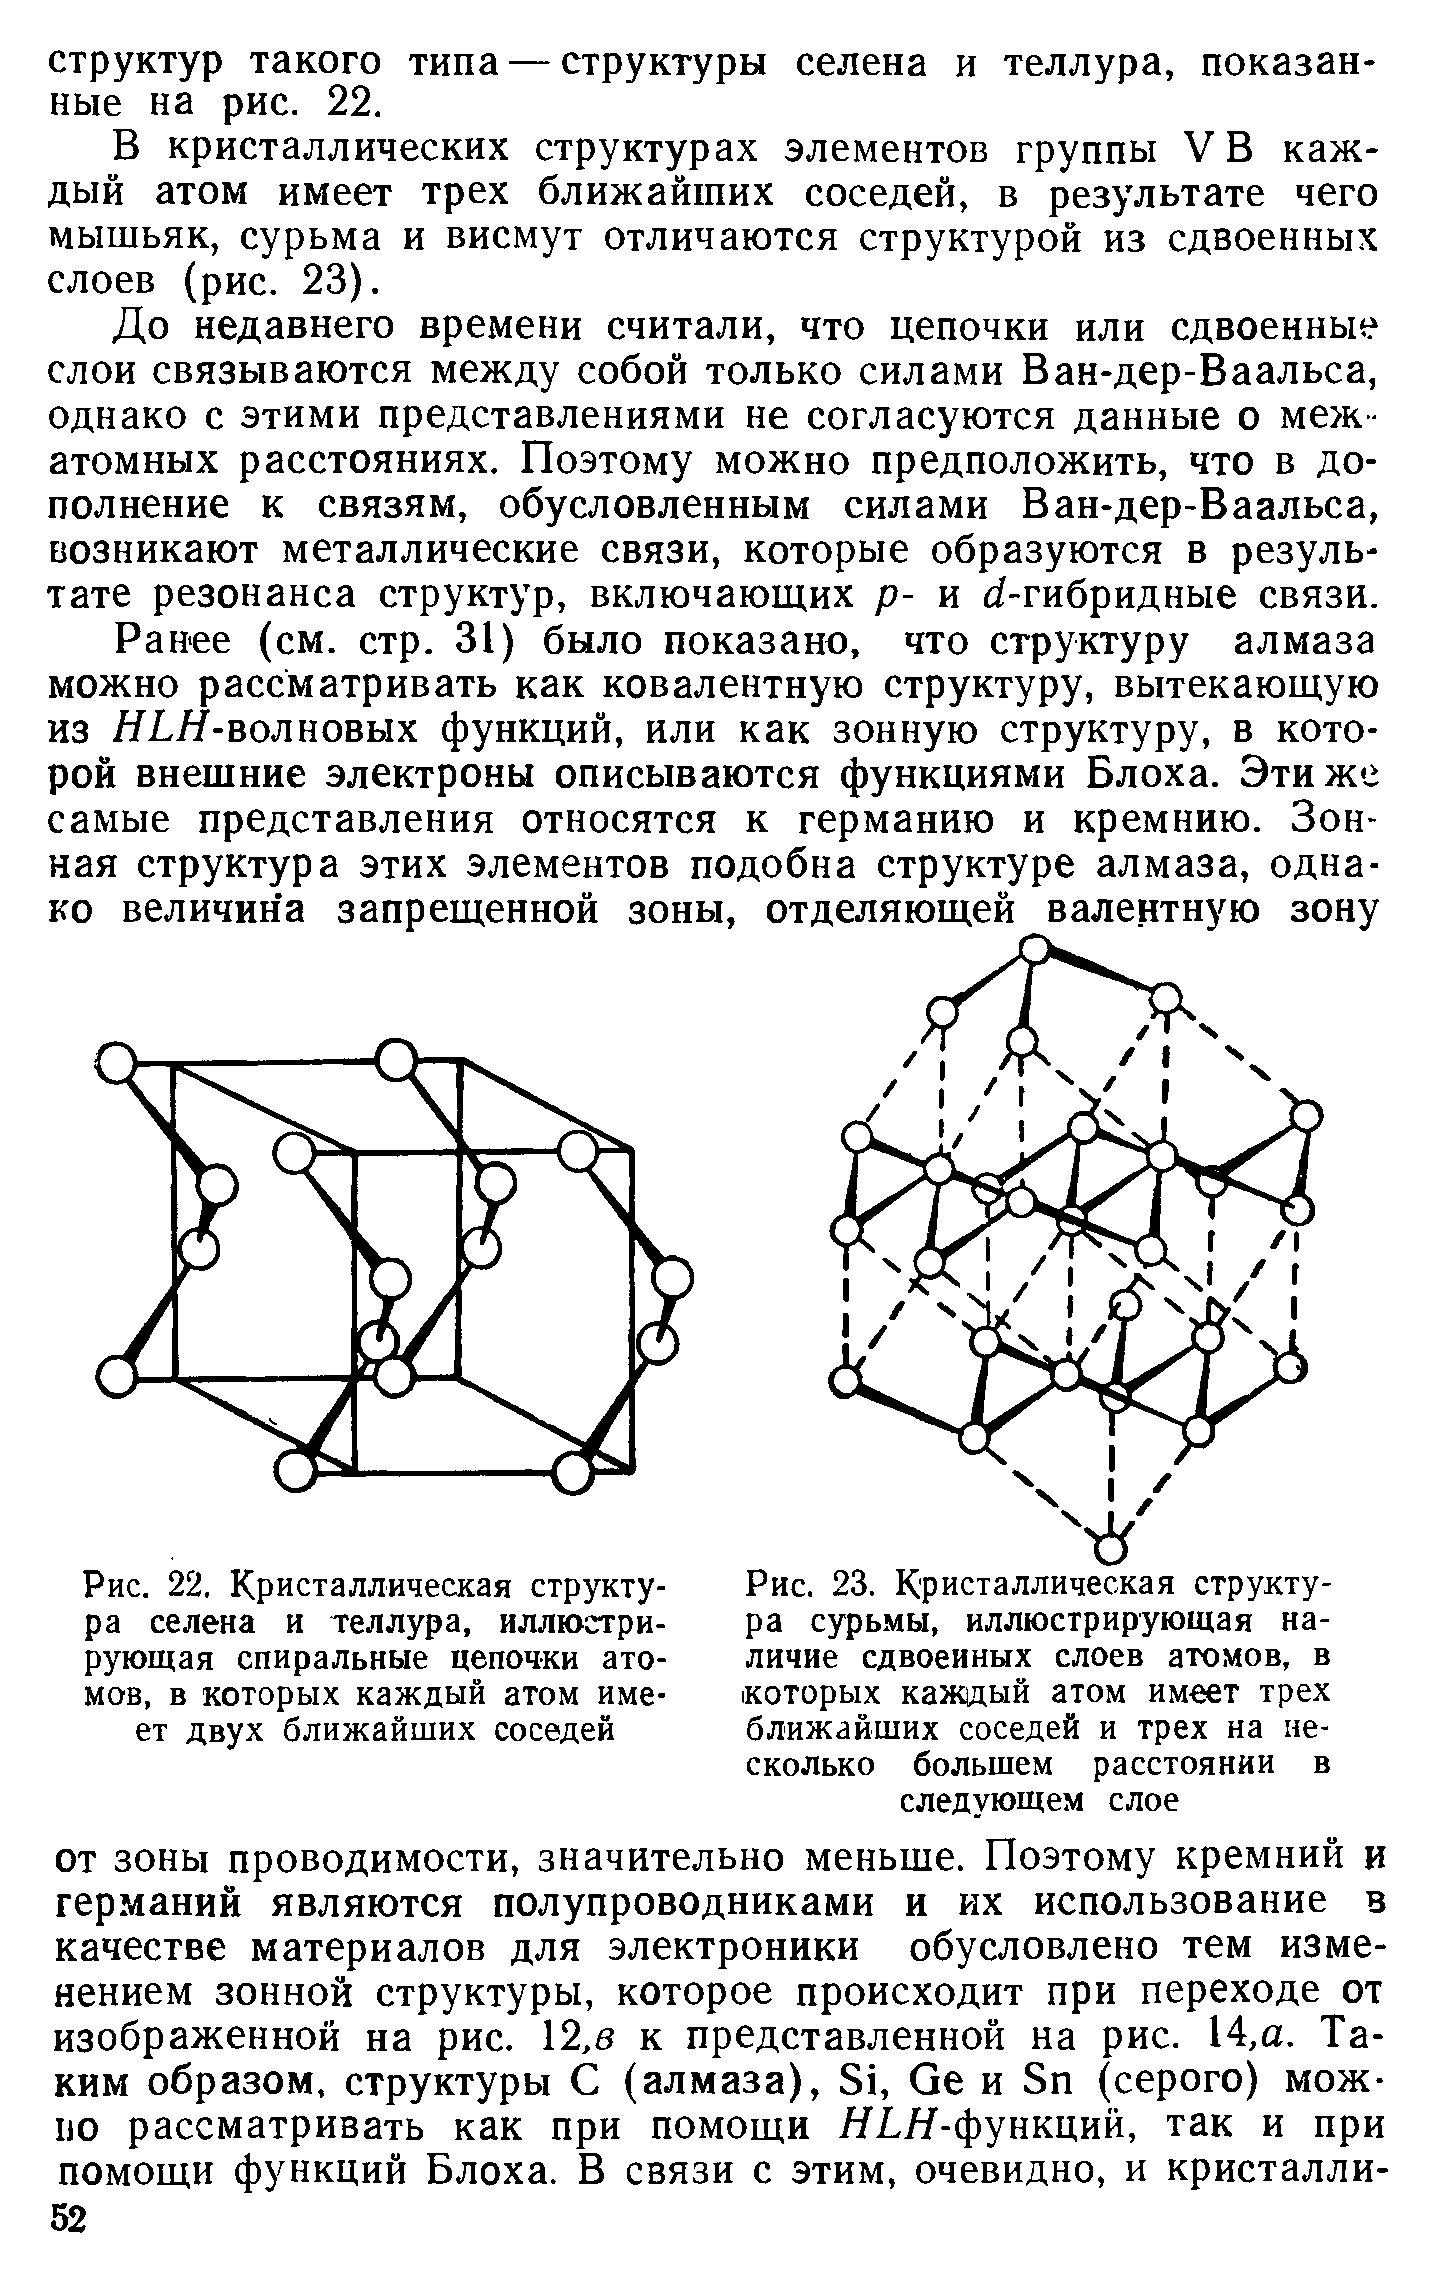 Рис. 22, Кристаллическая структура селена и теллура, иллюстрирующая спиральные цепочки атомов, в которых каждый атом имеет двух ближайших соседей
